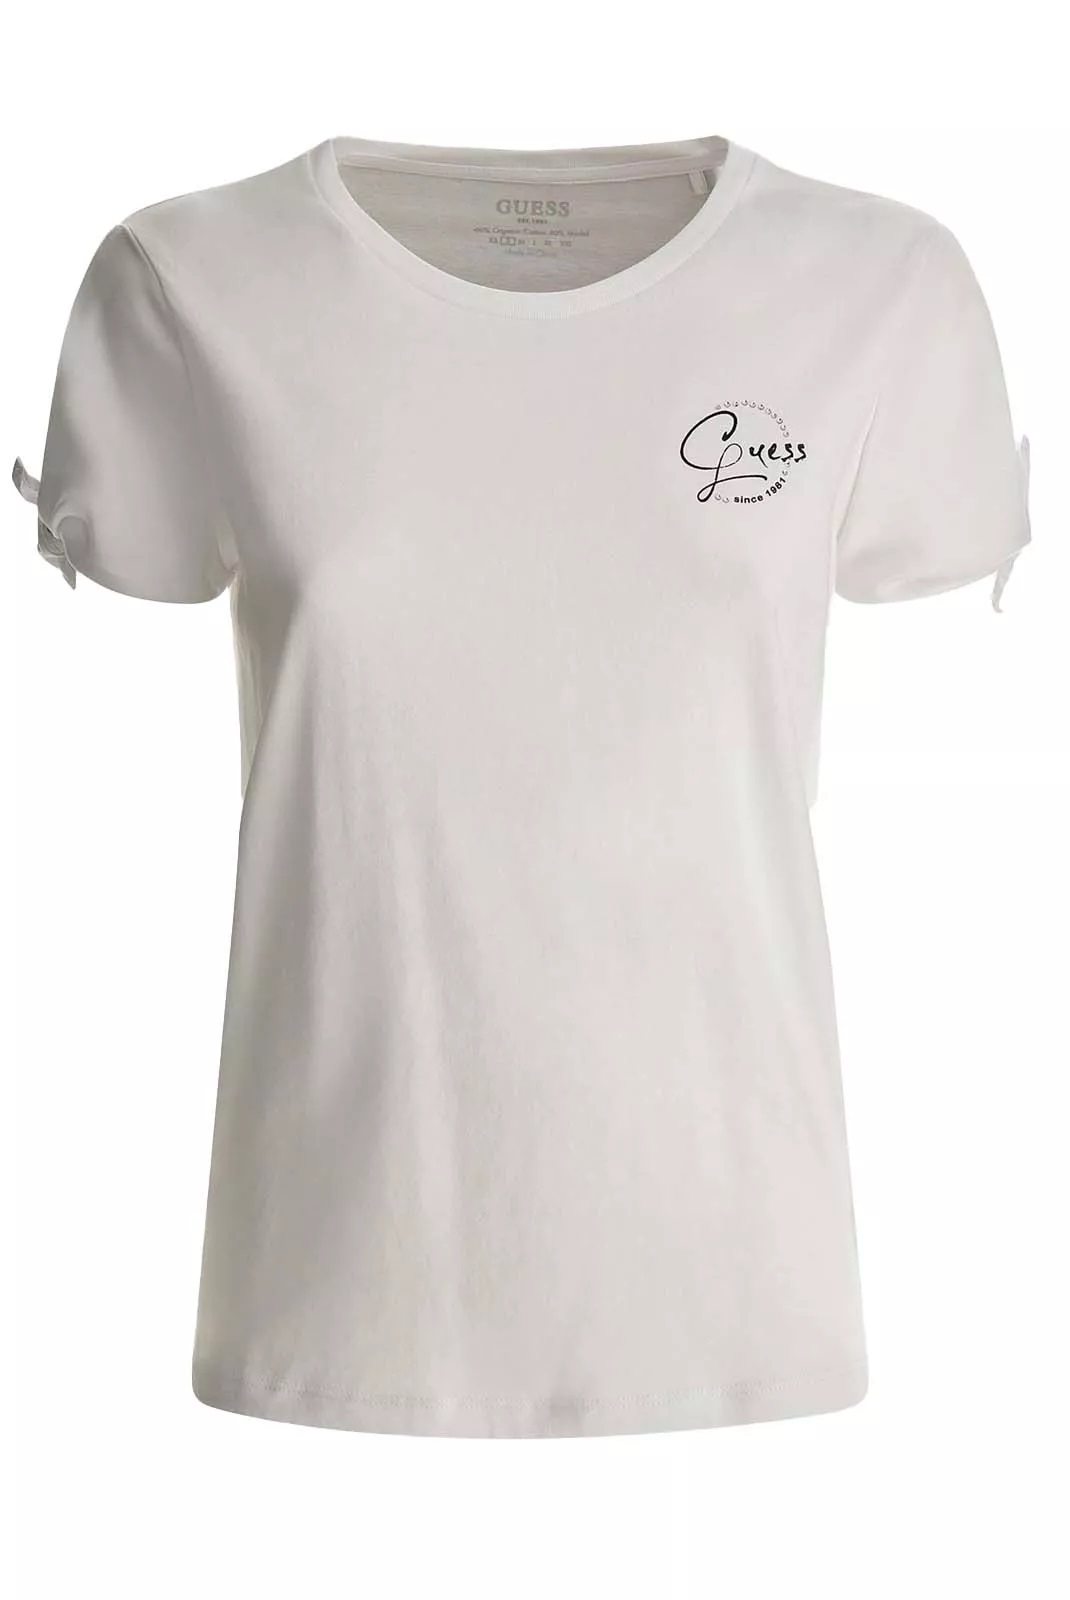 Guess dámské tričko s ozdobnými rukávy a kamínky bílé Velikost: S